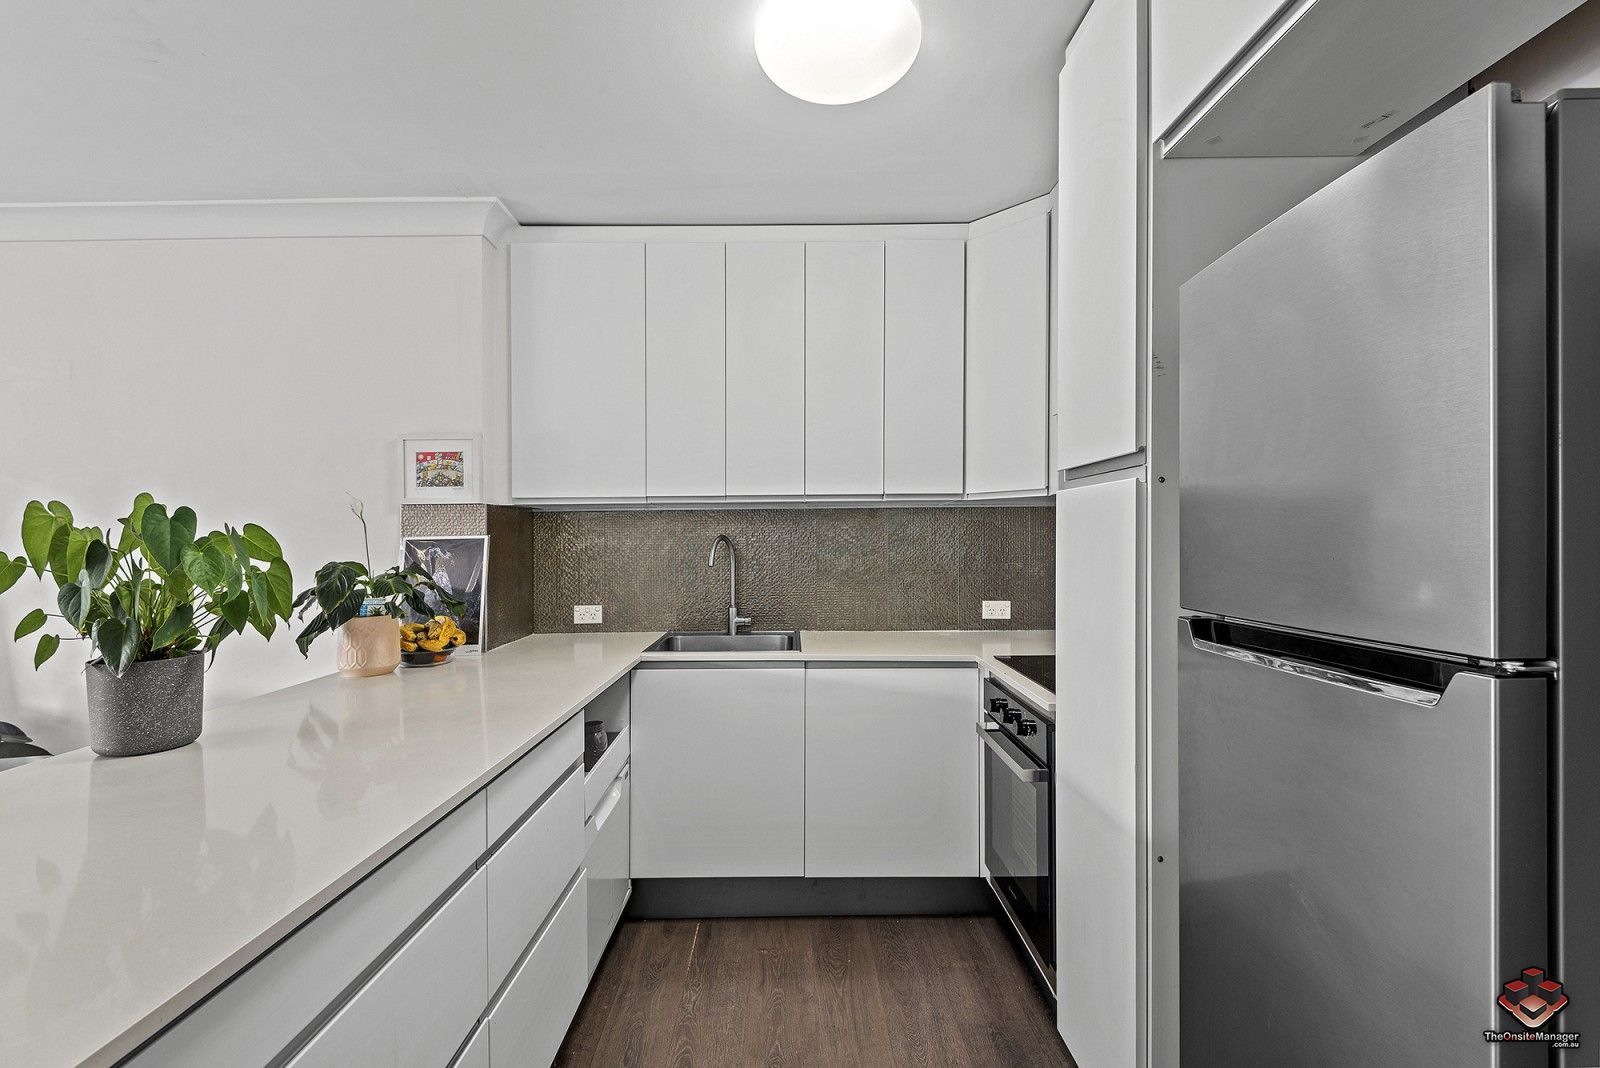 2 bedrooms Apartment / Unit / Flat in ID:21128660/52 Newstead Terrace NEWSTEAD QLD, 4006